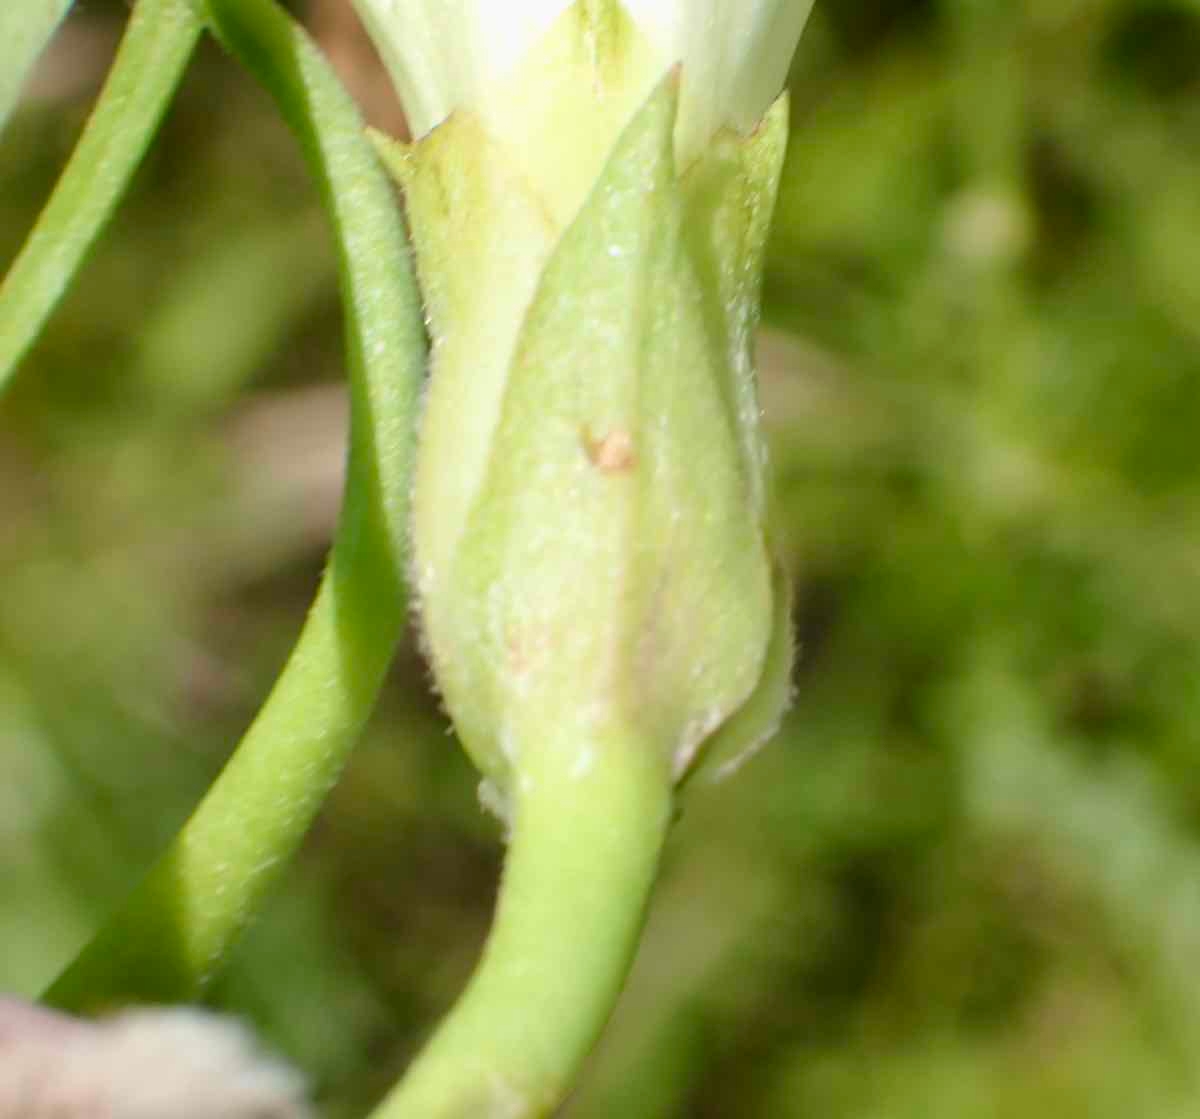 Calystegia subacaulis ssp. episcopalis